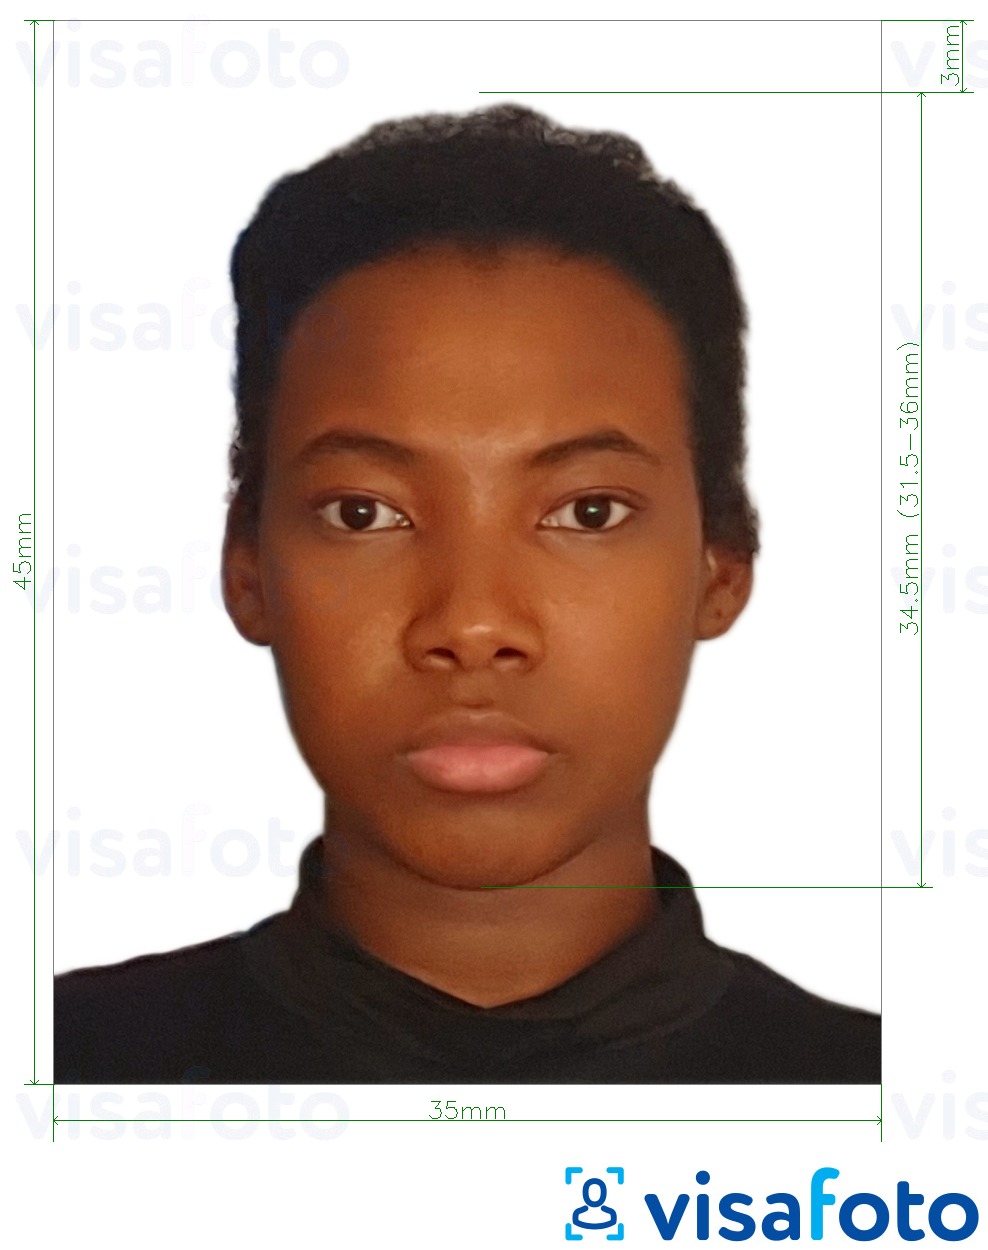 Primjer fotografije za Beninska viza 3,5x4,5 cm (35x45 mm) s točno određenom veličinom